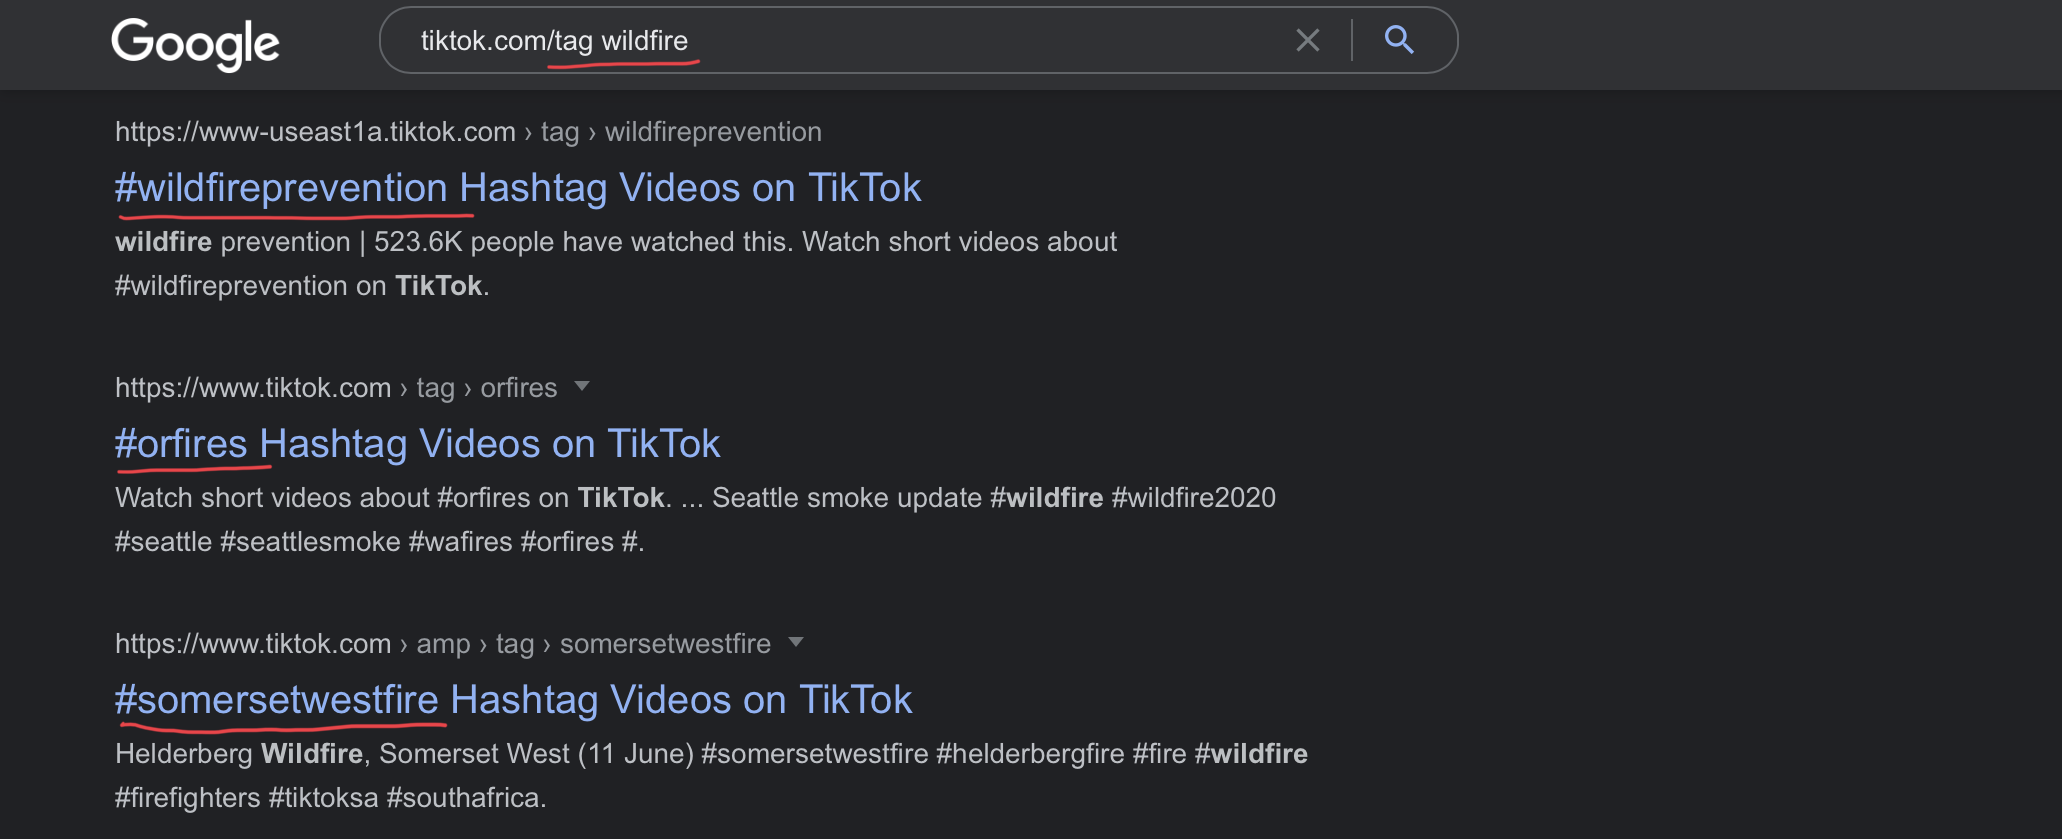 Videos from tik tok｜TikTok Search